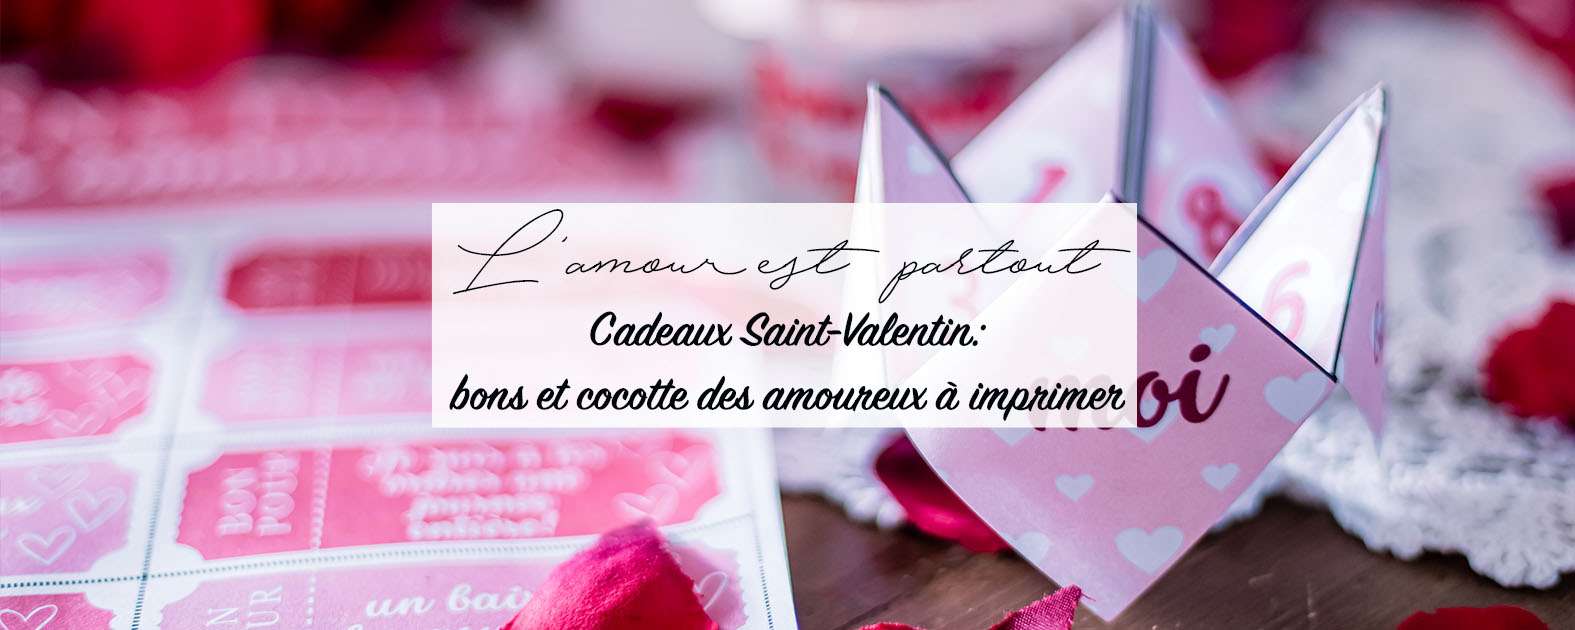 https://mademehappy.fr/wp-content/uploads/2023/02/cadeau-saint-valentin-bons-et-activite-a-imprimer.jpg